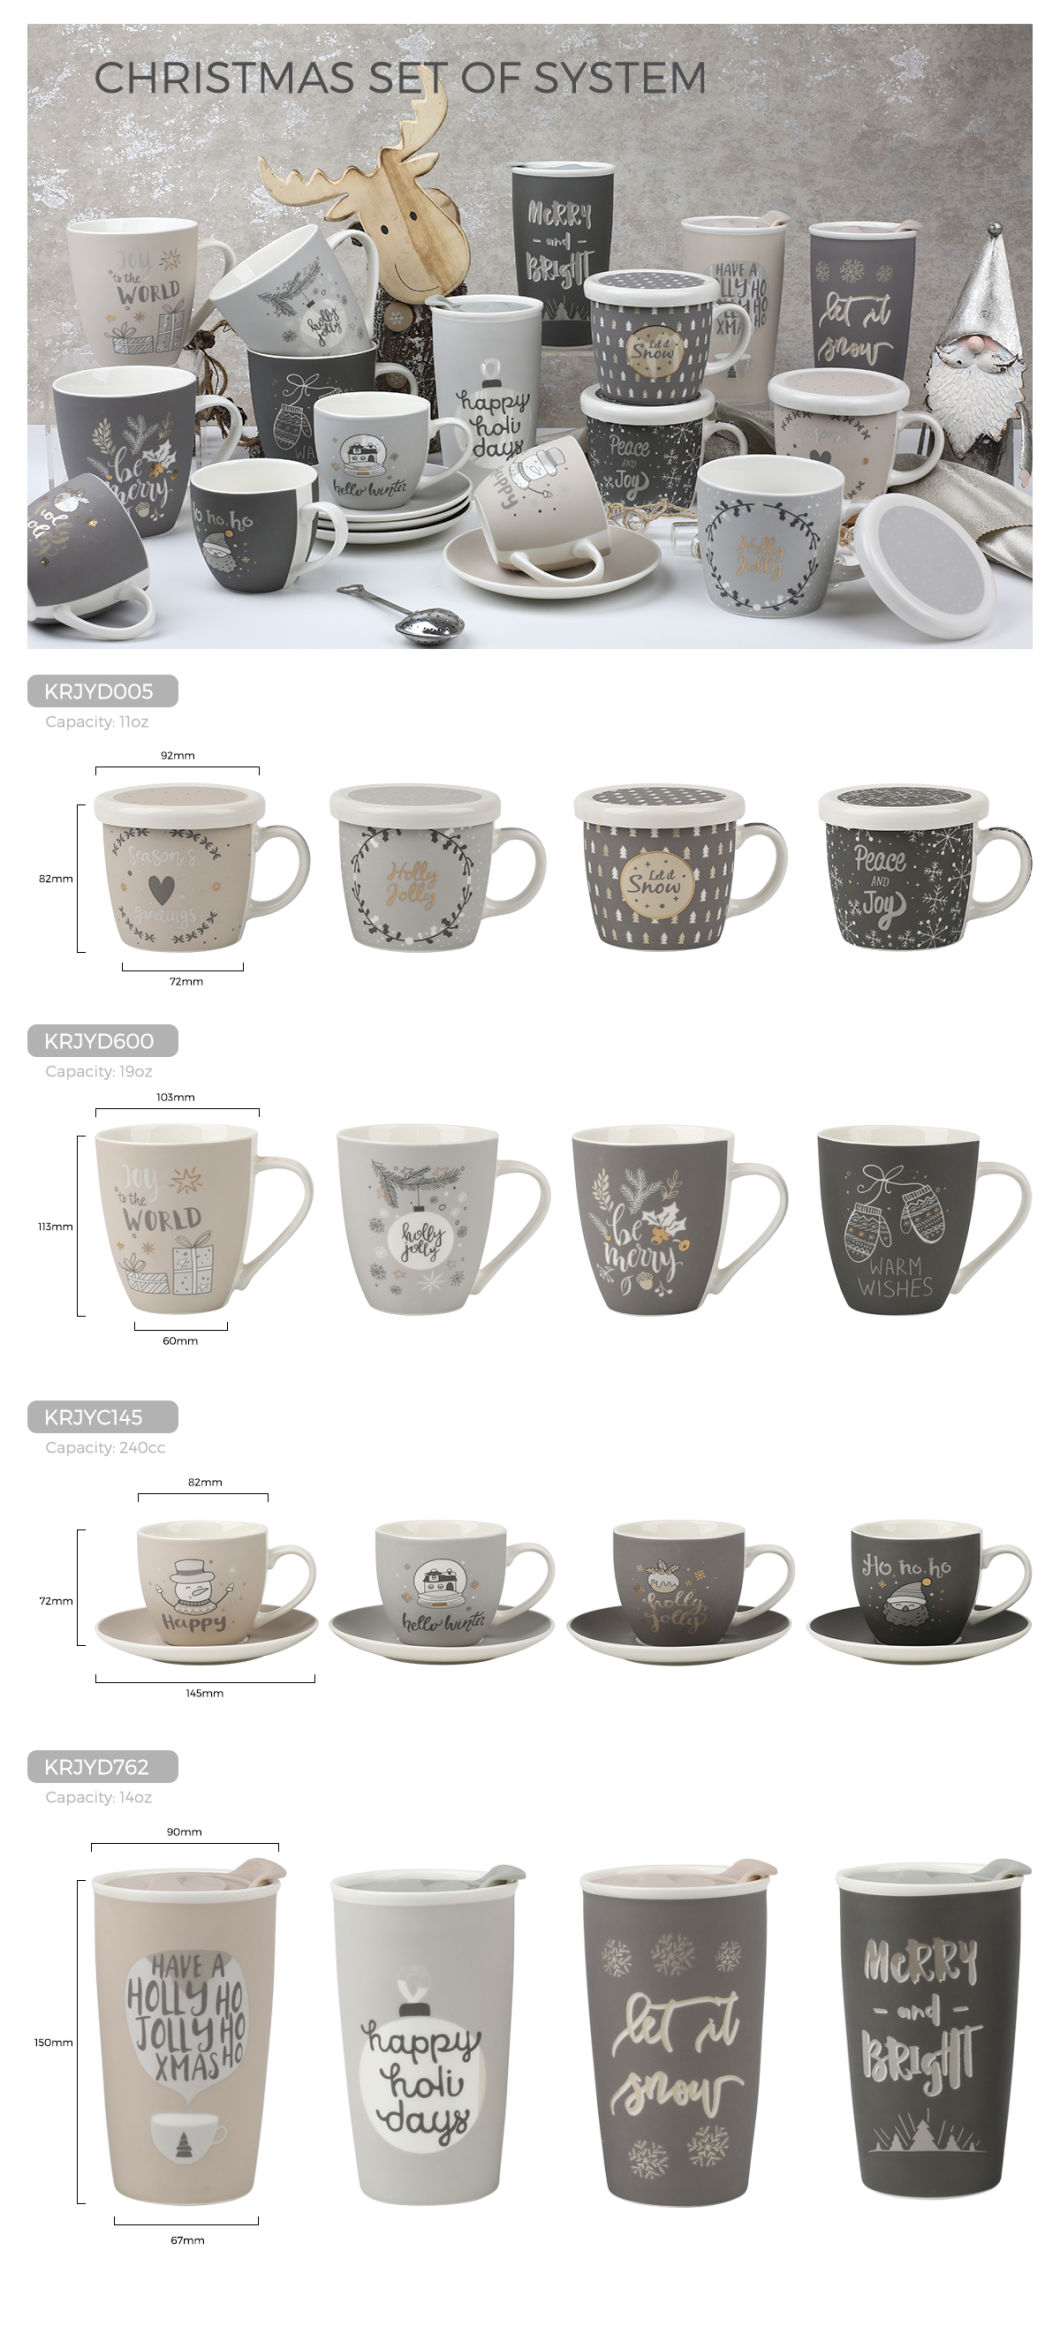 Christmas Mug Travel Mug with Lid Cup and Saucer Porcelain Mug with Ceramic Cover